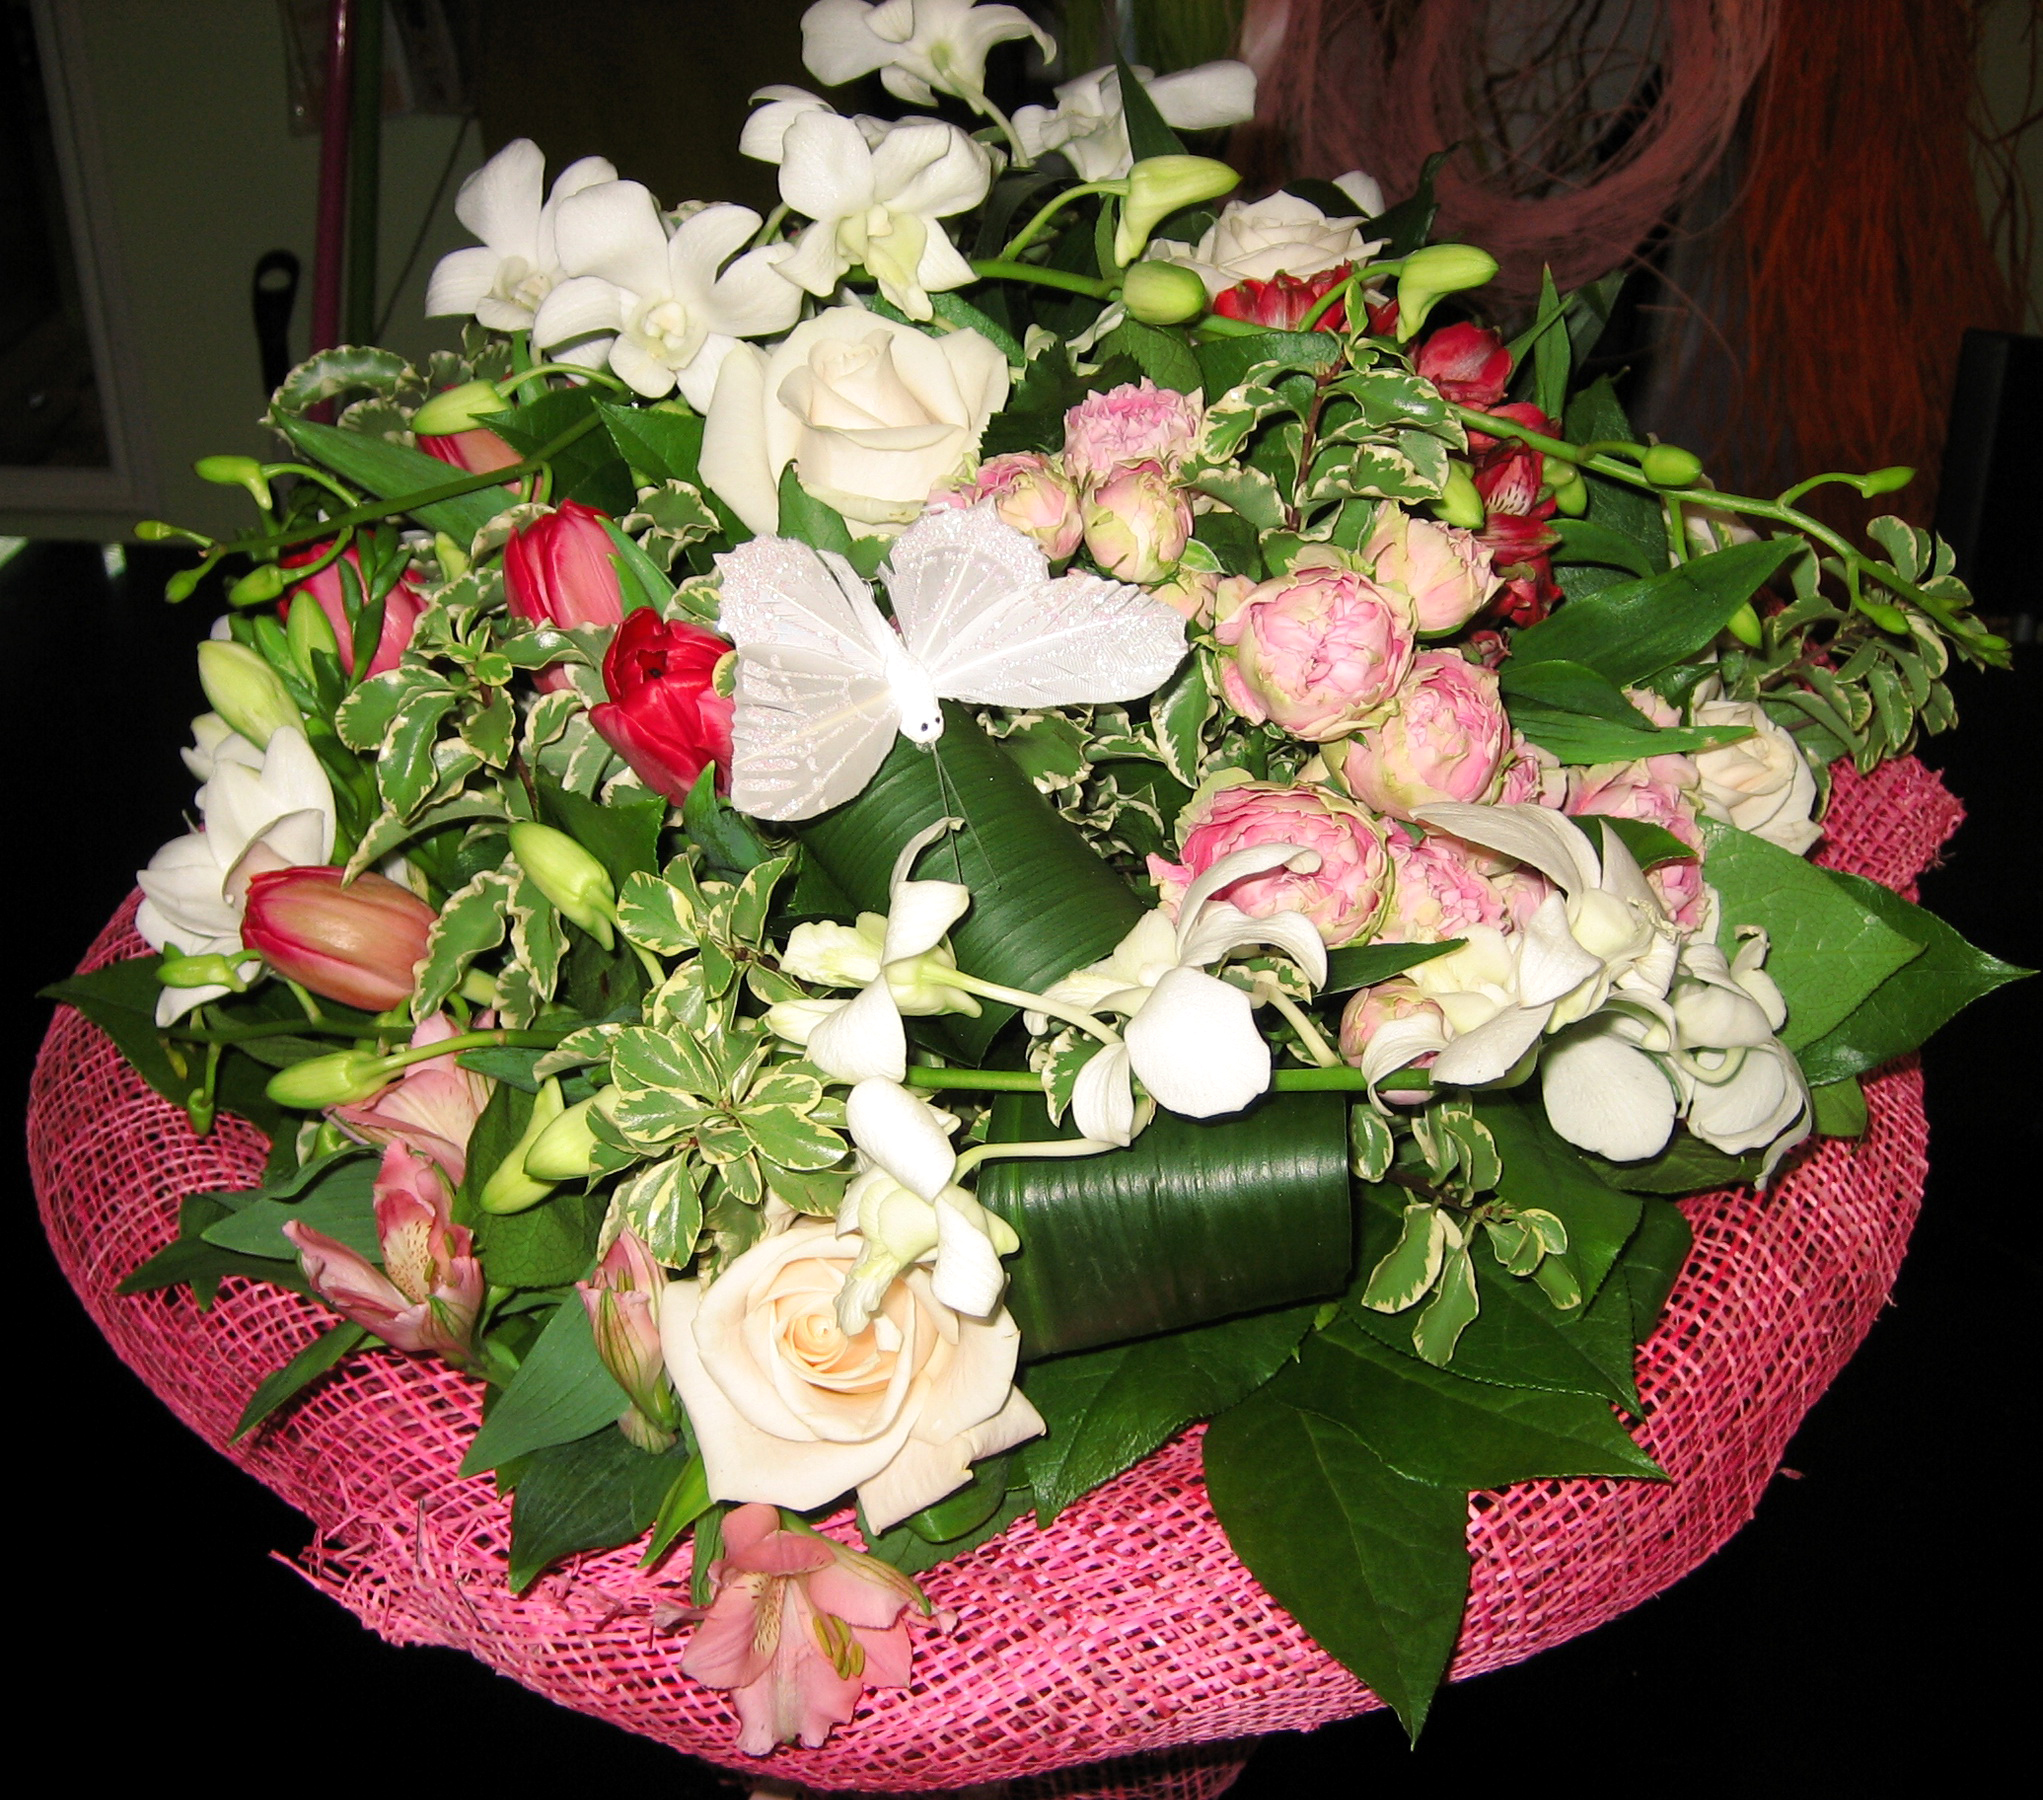 Фото реальных букетов цветов дома. Букет цветов. Красивый букет цветов. Букет шикарный. Букет цветов на столе.